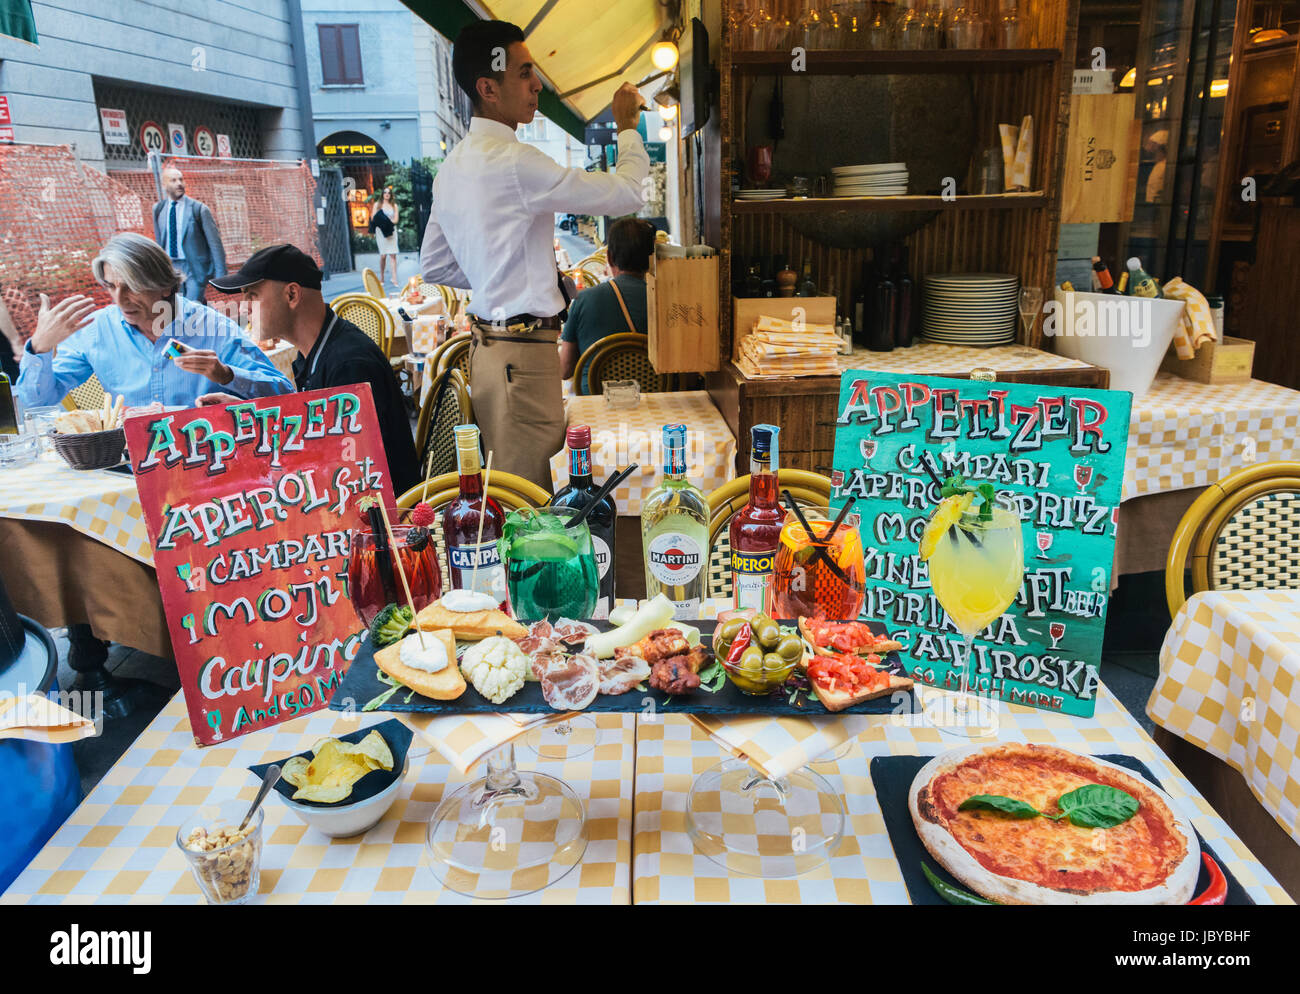 Une table pleine de nourriture et de boissons liés à la tradition milanaise de la 'aperitivo' le soir Banque D'Images